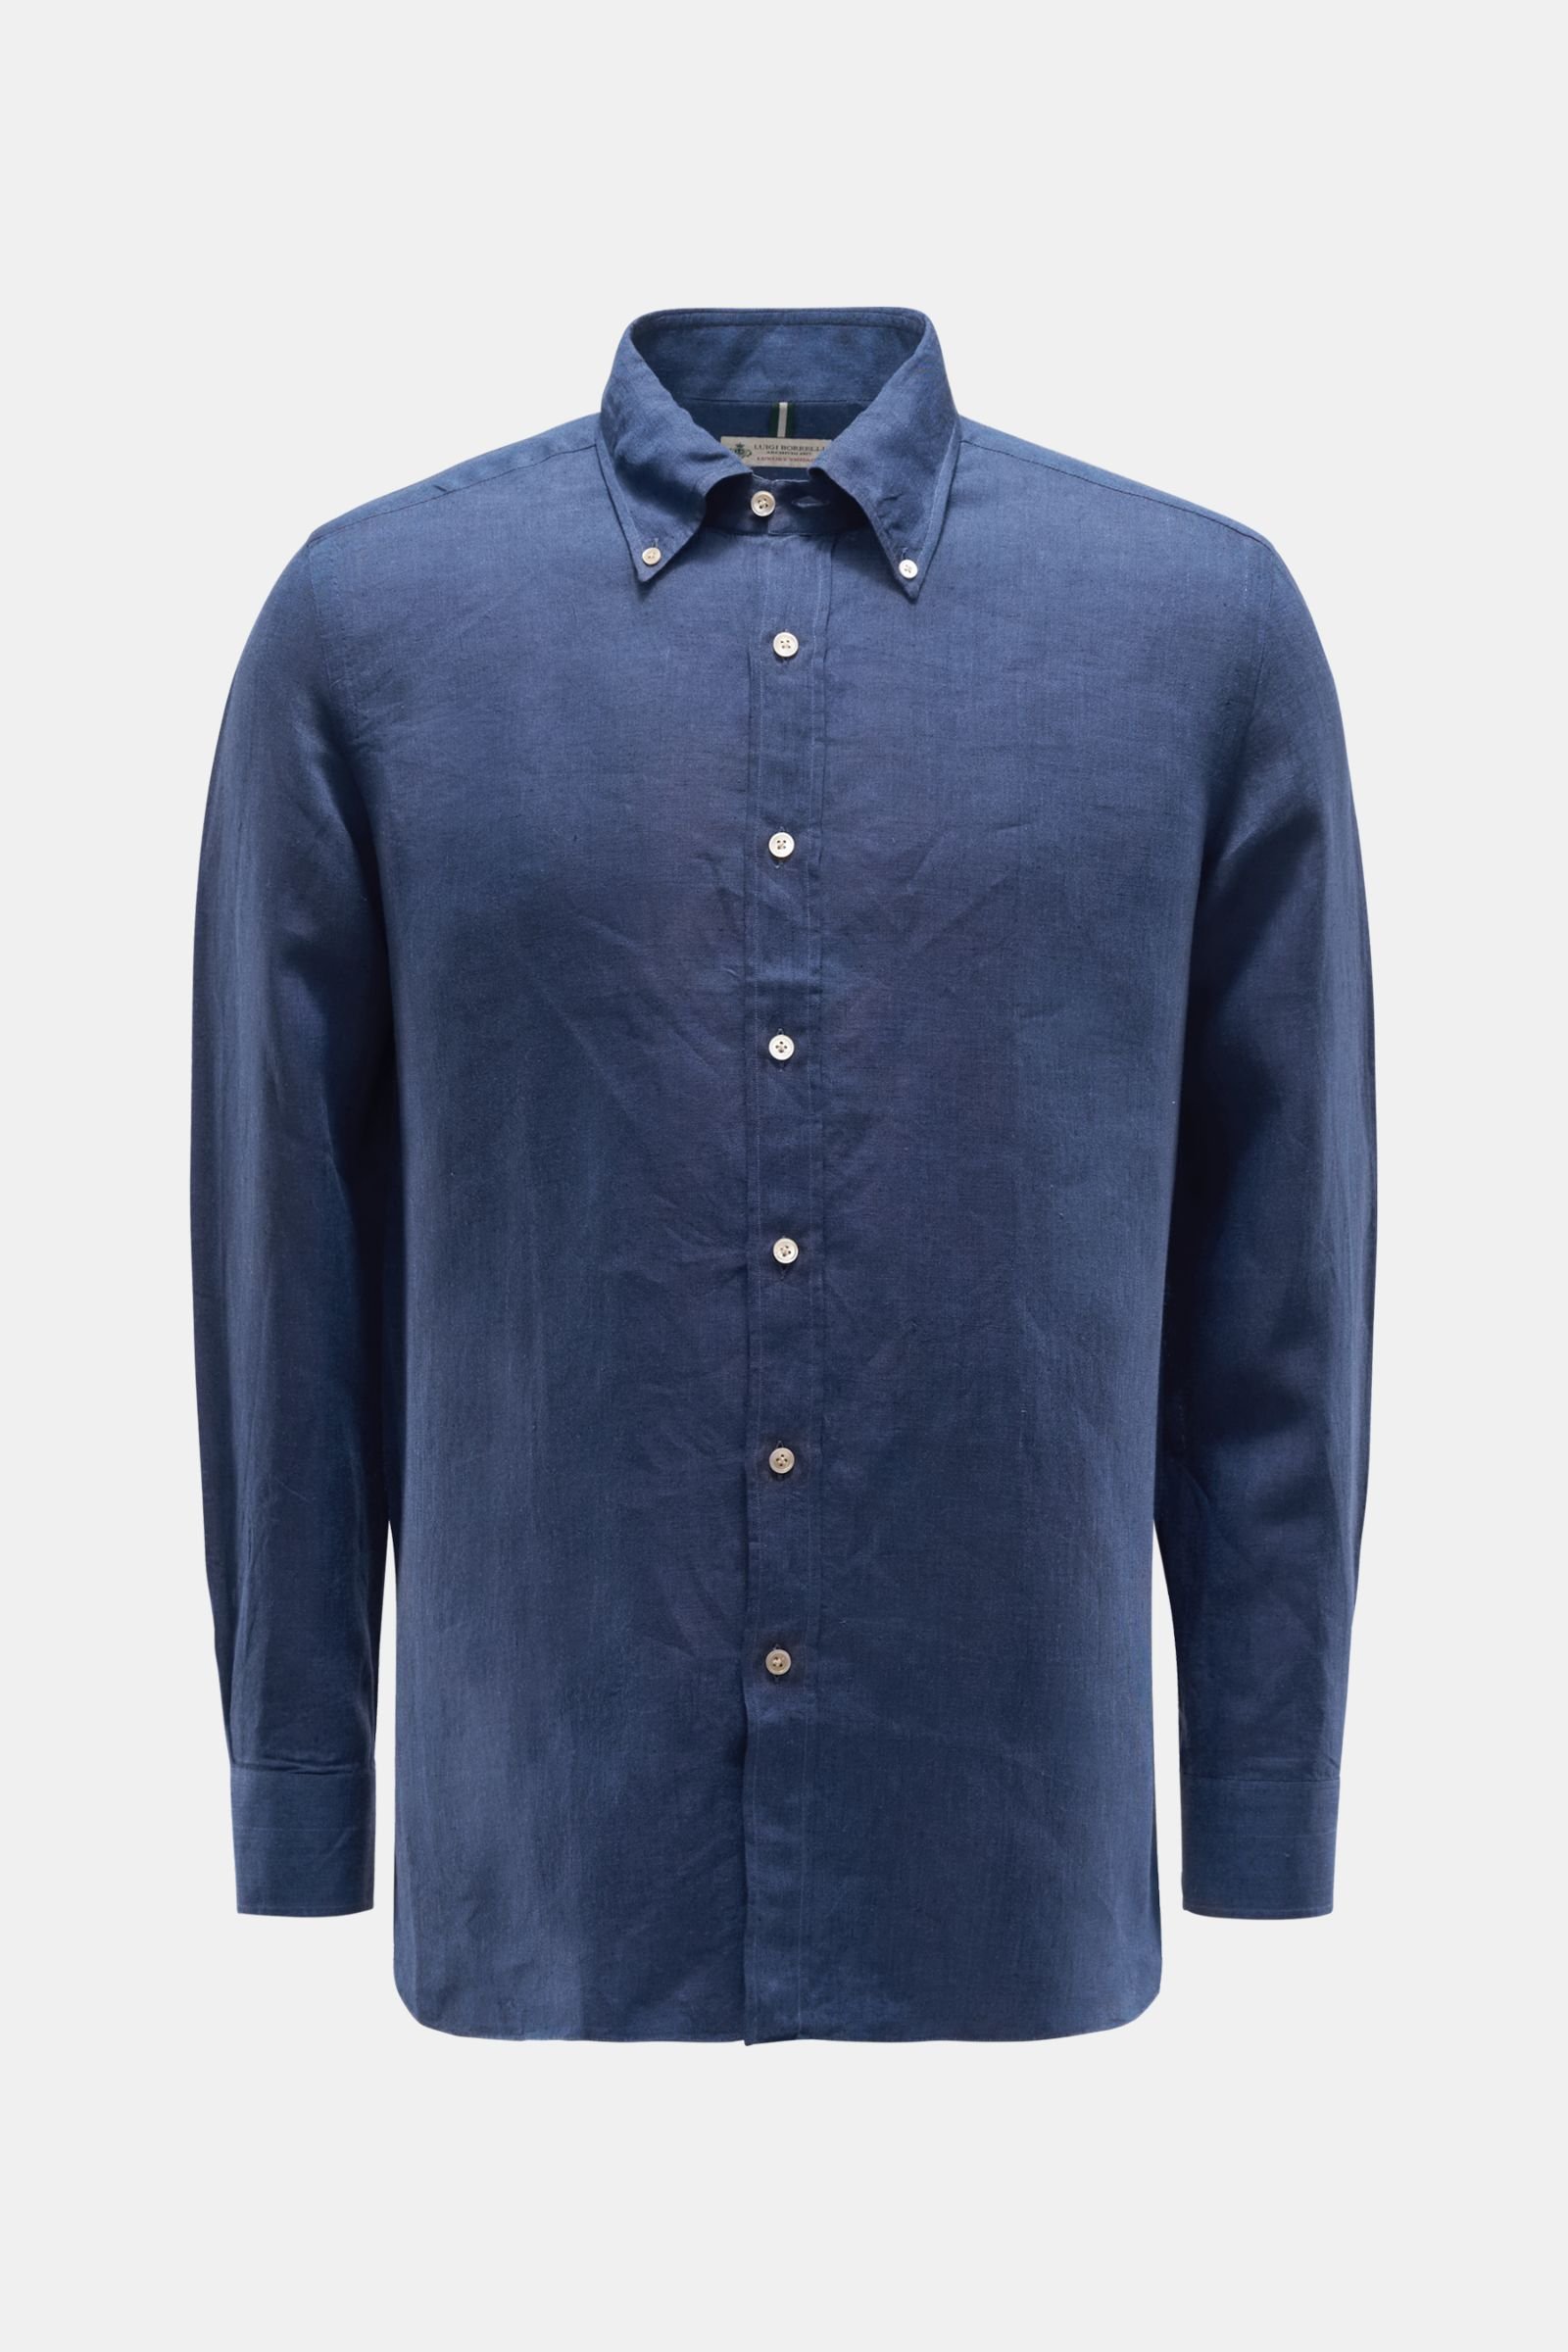 Linen shirt 'Gable' button-down collar navy